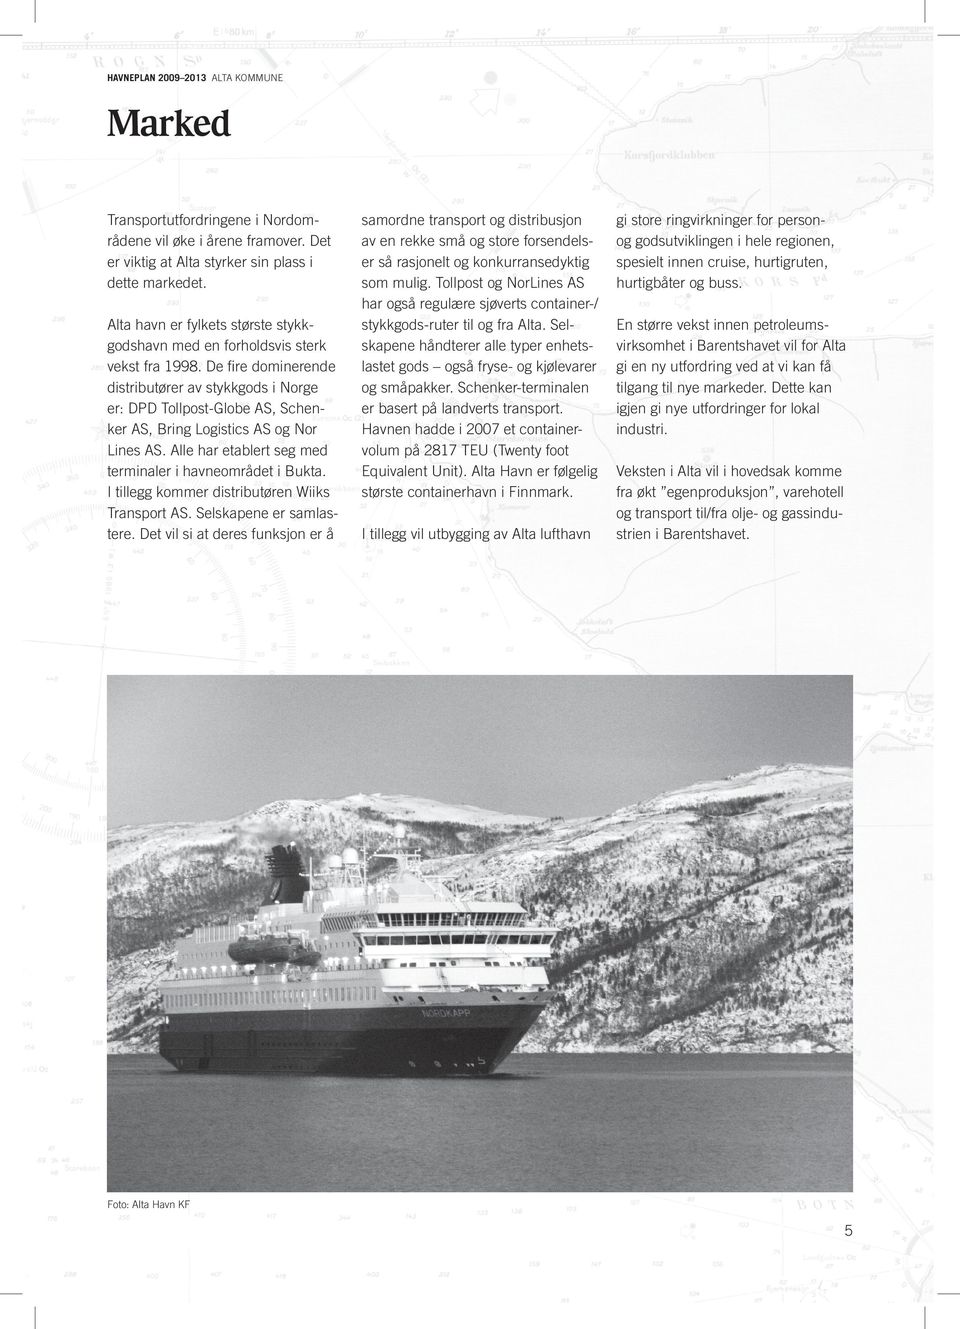 De fire dominerende distributører av stykkgods i Norge er: DPD Tollpost-Globe AS, Schenker AS, Bring Logistics AS og Nor Lines AS. Alle har etablert seg med terminaler i havneområdet i Bukta.